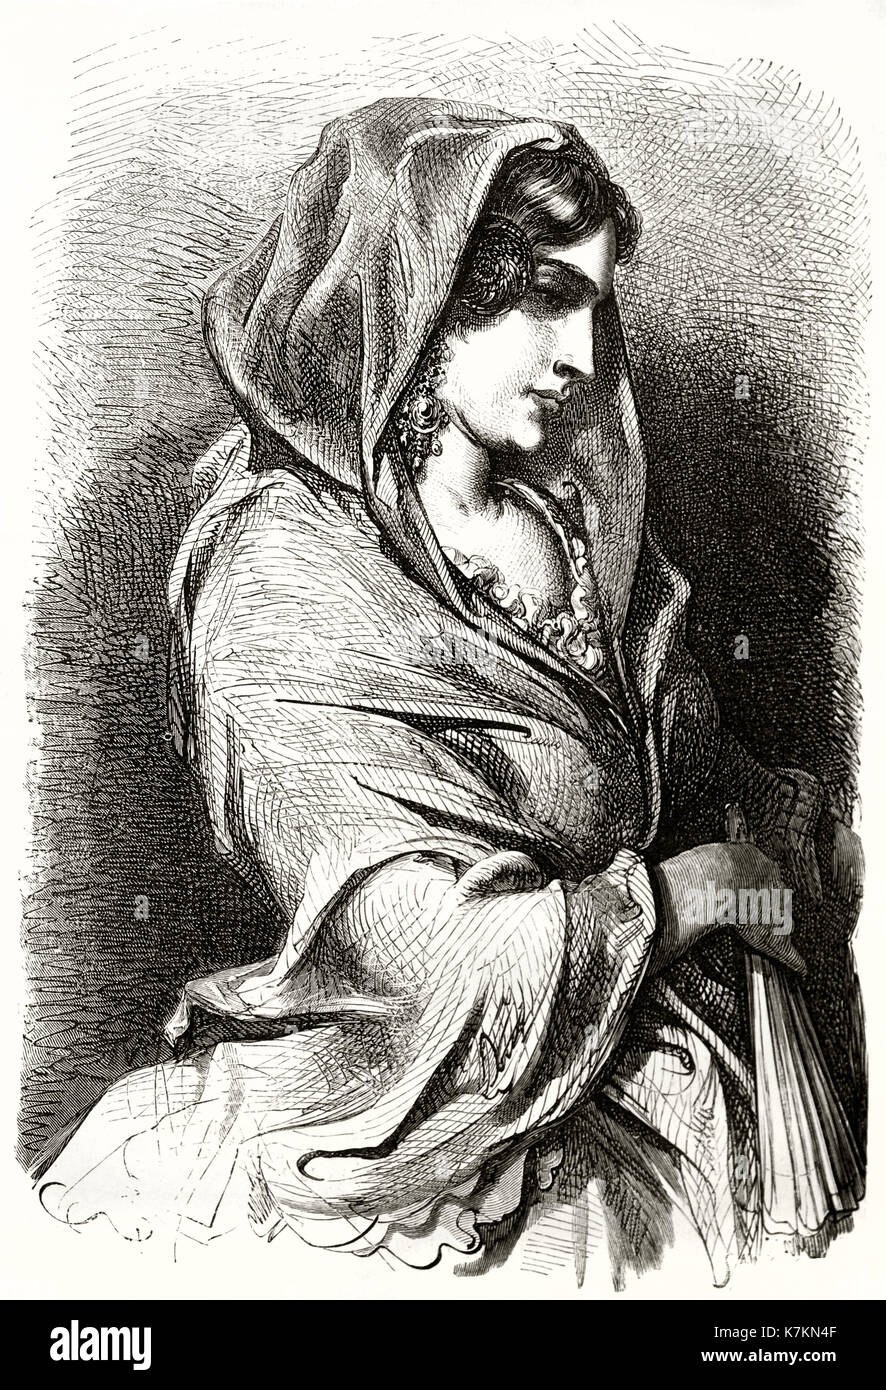 Vecchio inciso il ritratto di una ragazza di Valencia, Spagna. Da Dore, publ. in Le Tour du Monde, Parigi, 1862 Foto Stock